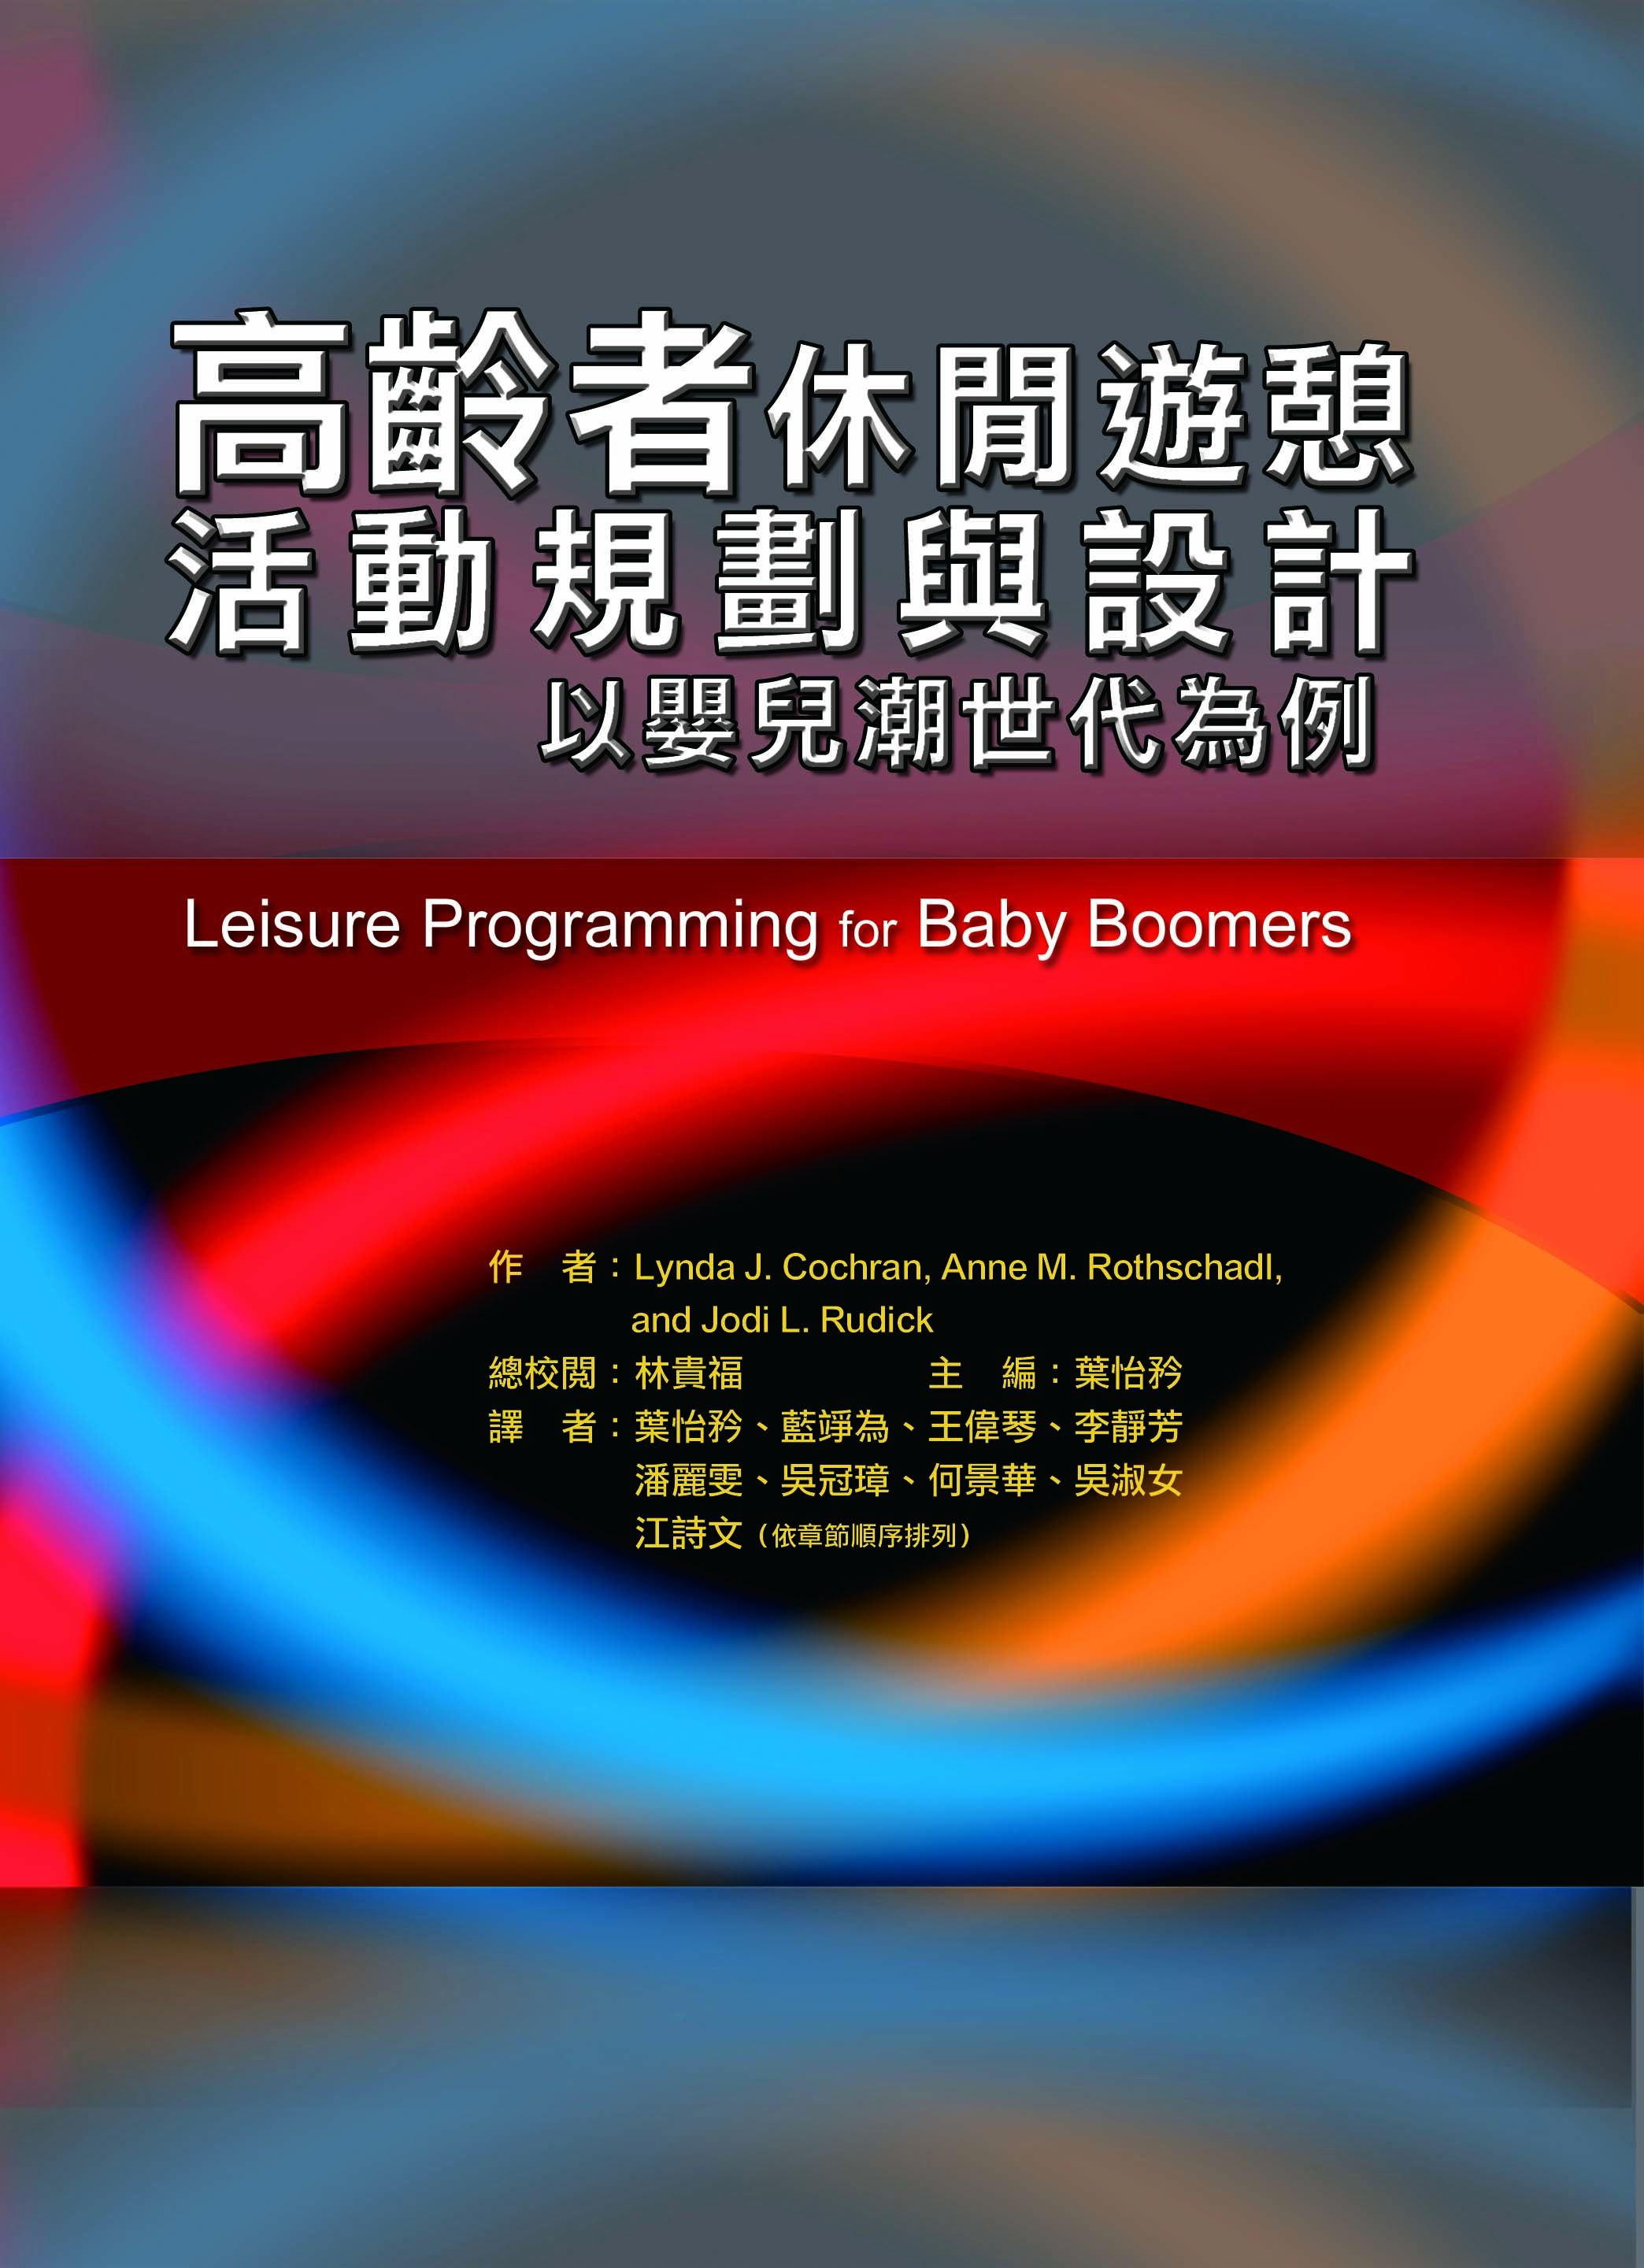 高齡者休閒遊憩活動規劃與設計以嬰兒潮世代為例（Leisure Programming for Baby Boomers）